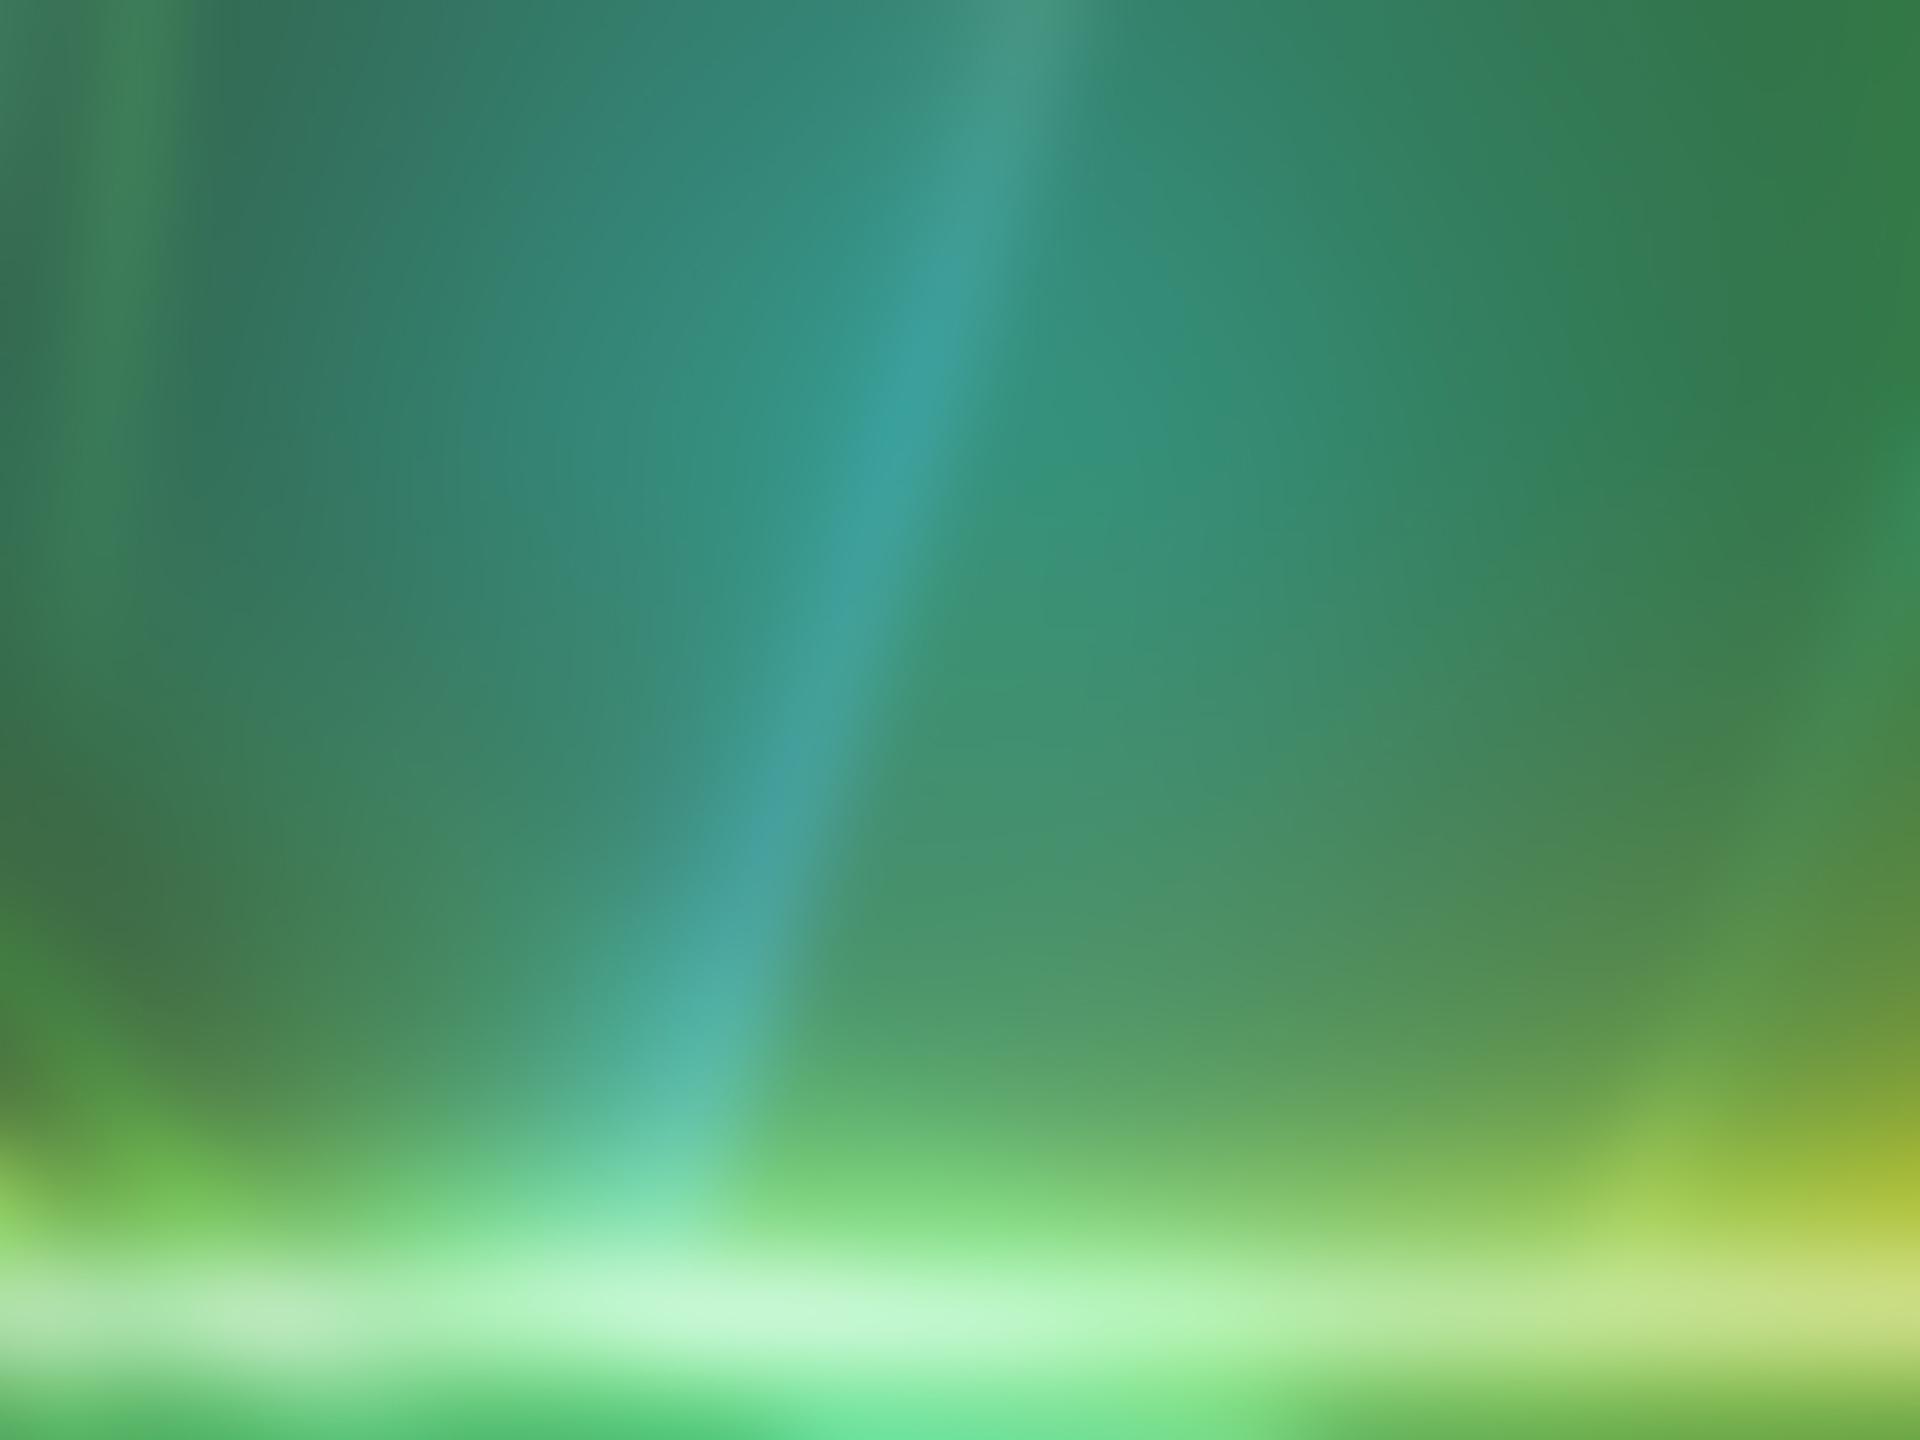 Green Windows 7 wallpaper Definition, High Resolution HD Wallpaper, High Definition, High Resolution HD Wallpaper